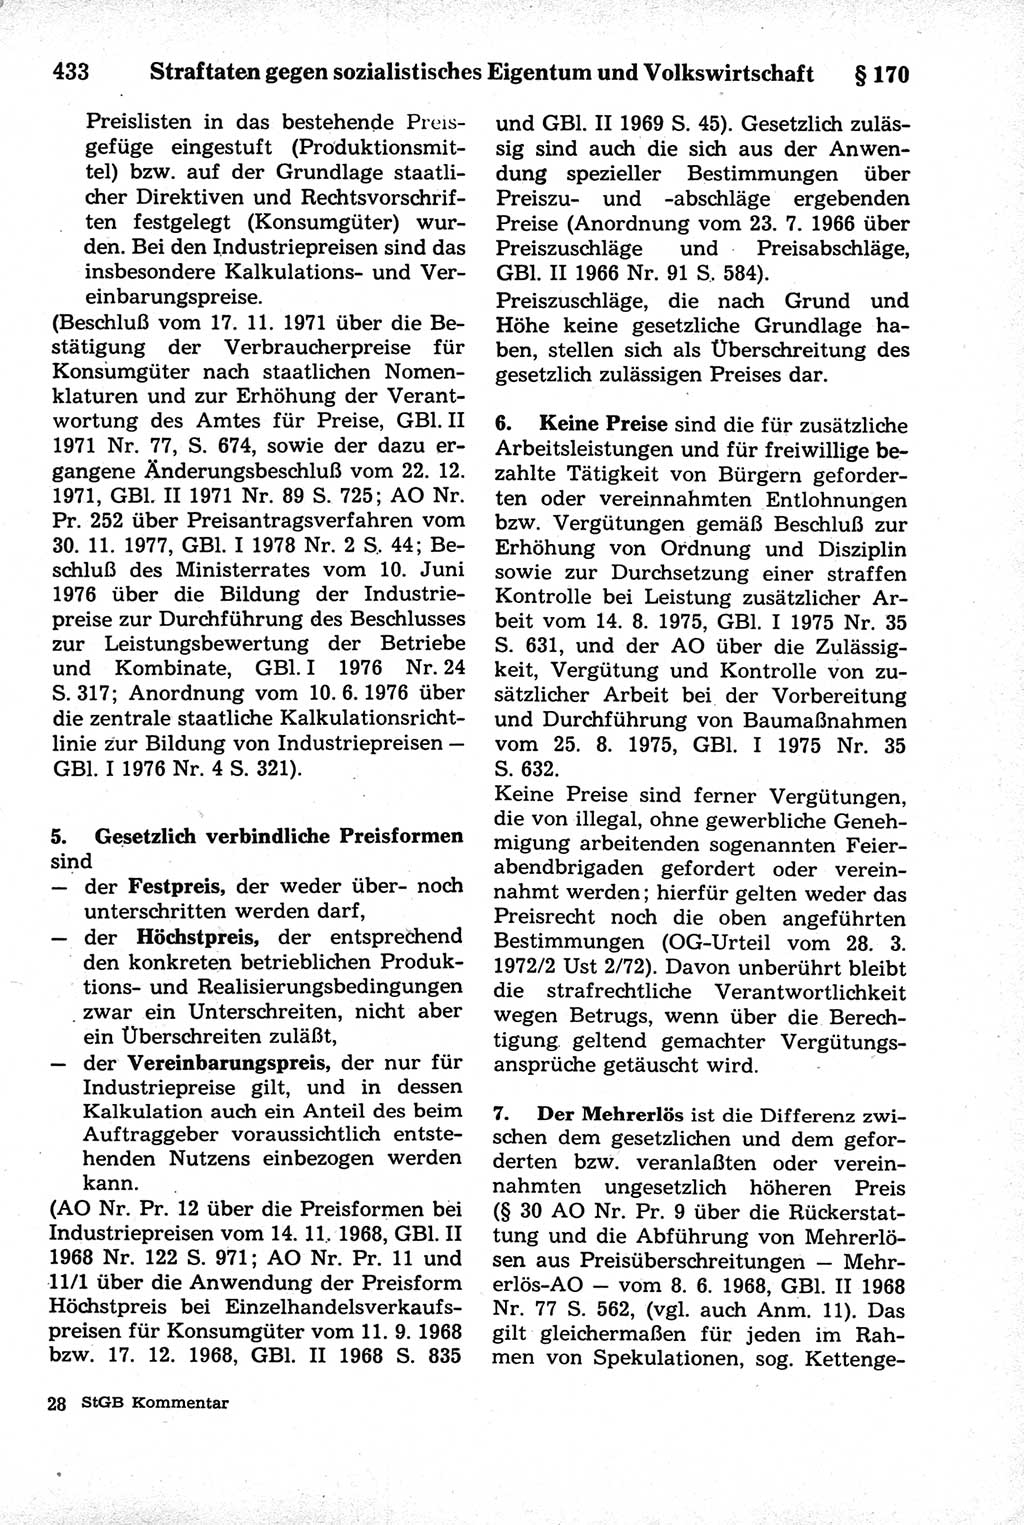 Strafrecht der Deutschen Demokratischen Republik (DDR), Kommentar zum Strafgesetzbuch (StGB) 1981, Seite 433 (Strafr. DDR Komm. StGB 1981, S. 433)